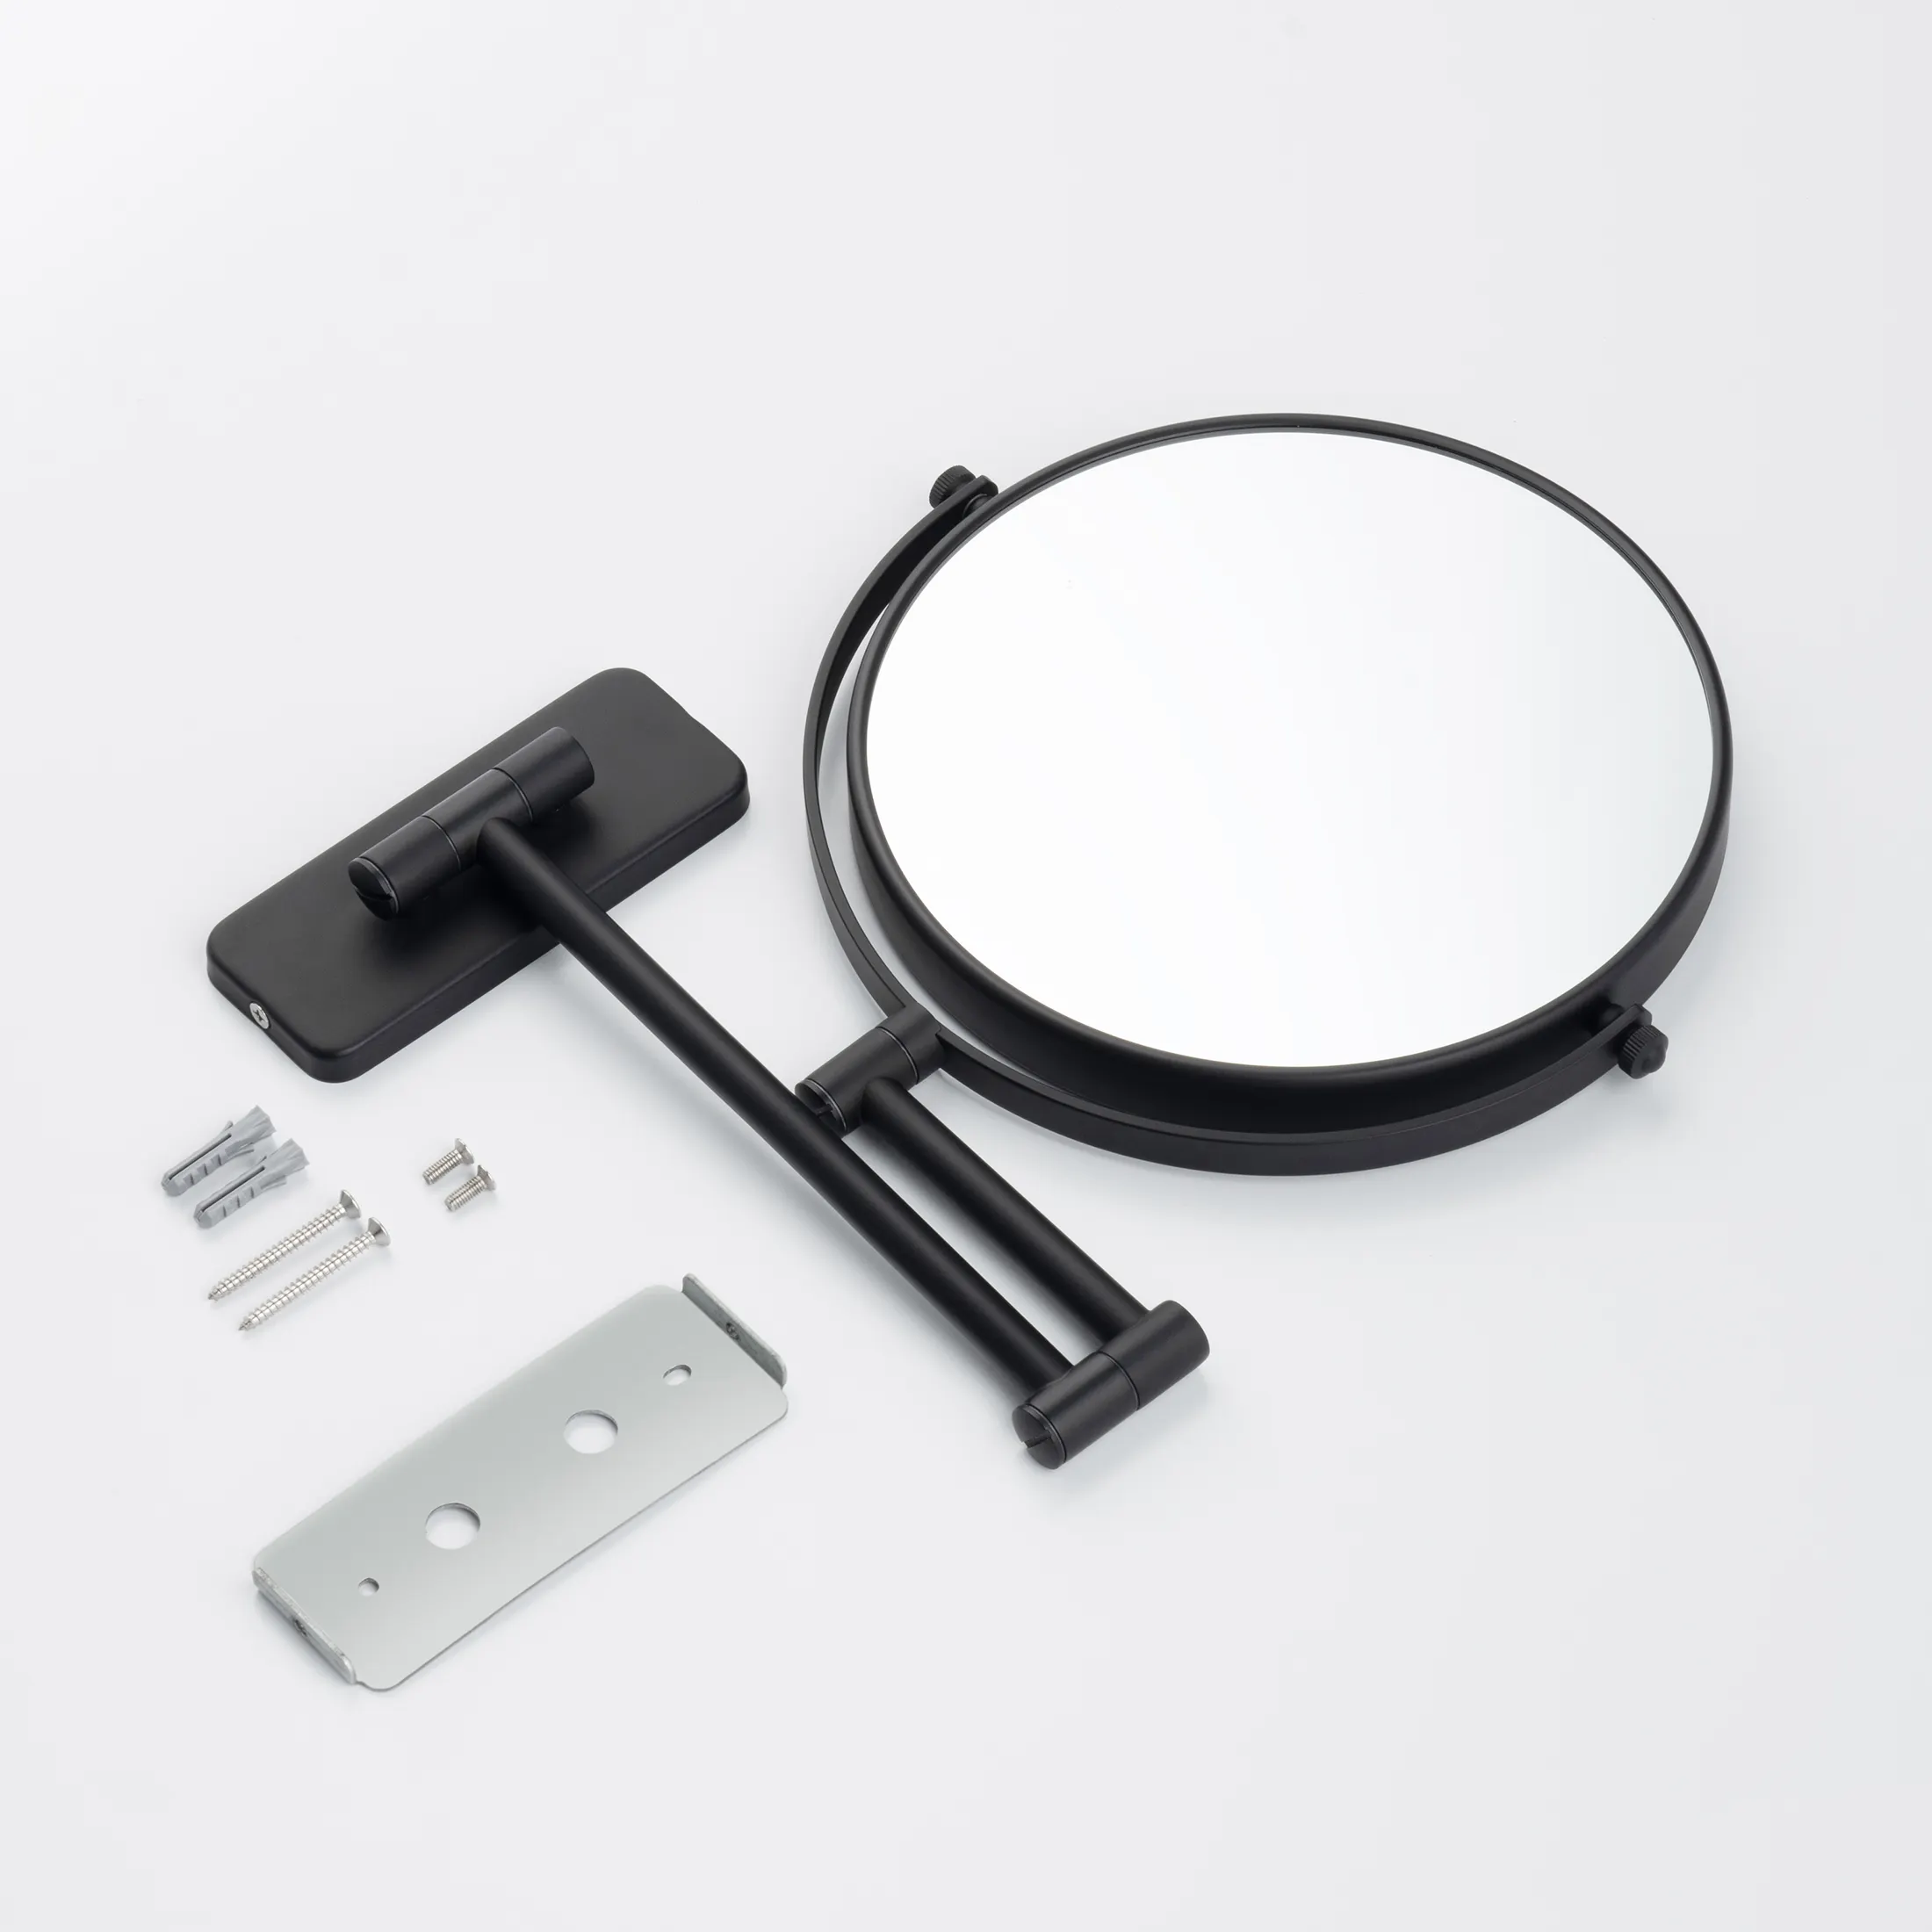 Schein 9341MB Косметическое зеркало 5x настенное (чёрный)